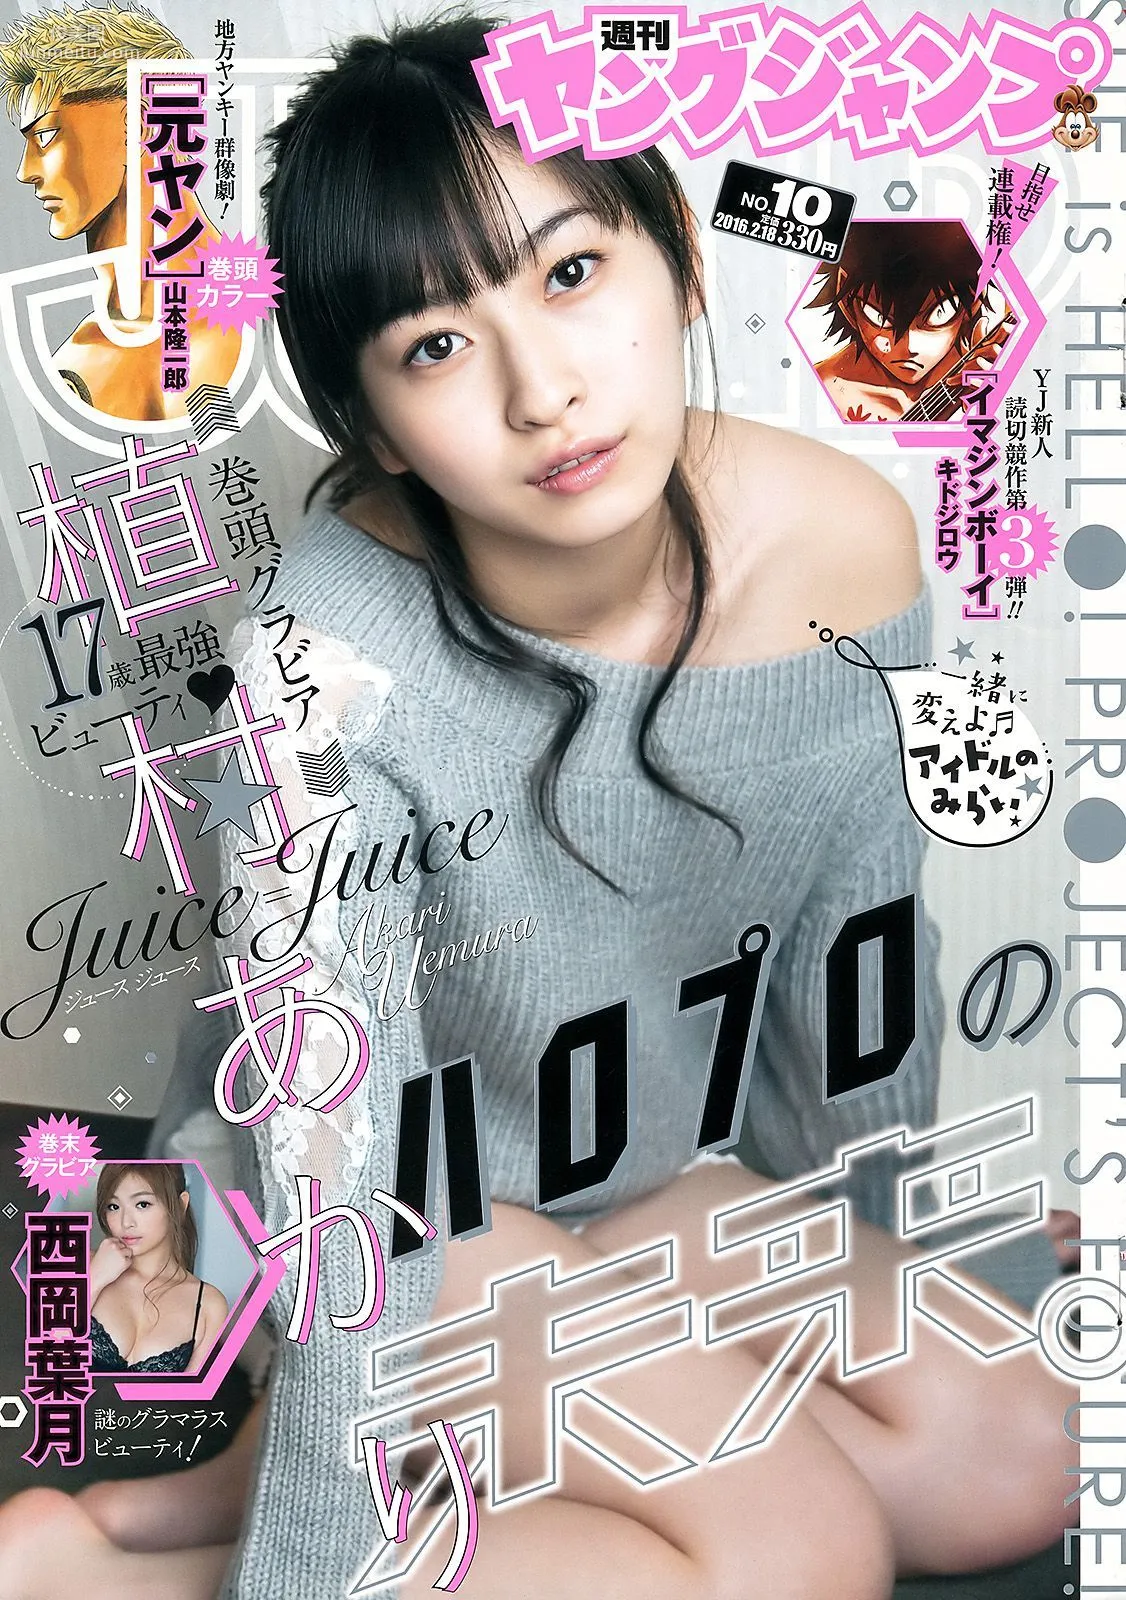 植村あかり 西岡葉月 [Weekly Young Jump] 2016年No.10 写真杂志1